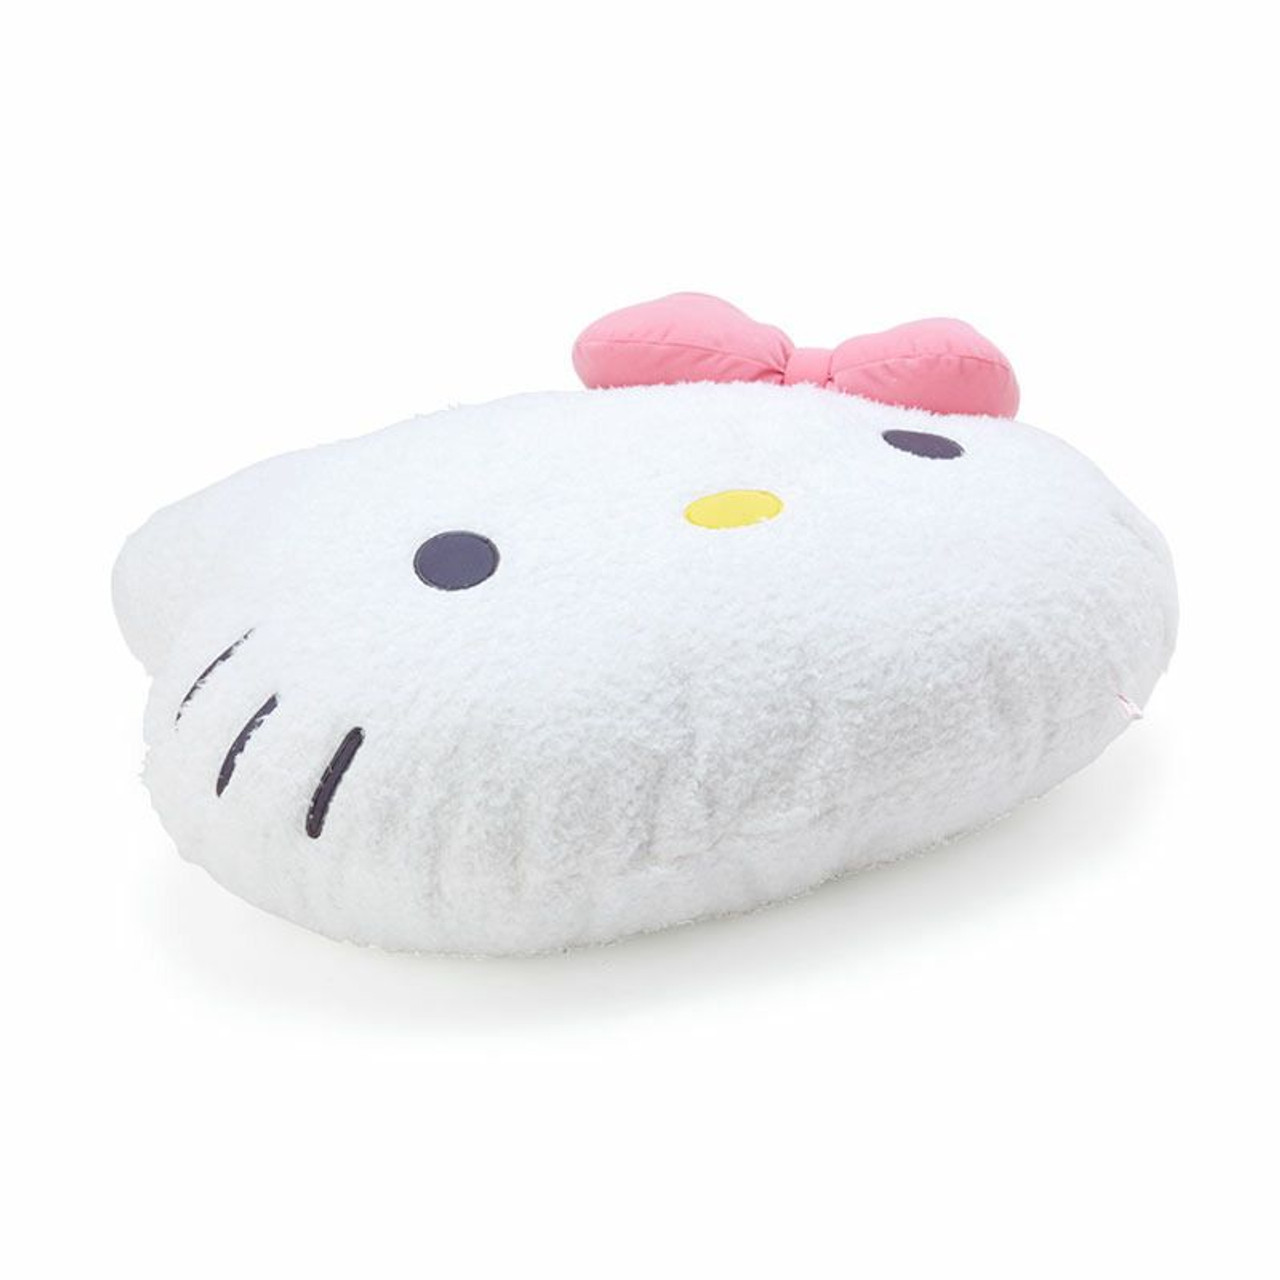 Sanrio Hello Kitty Mini Back Arm Rest Pillow Plush NWOT